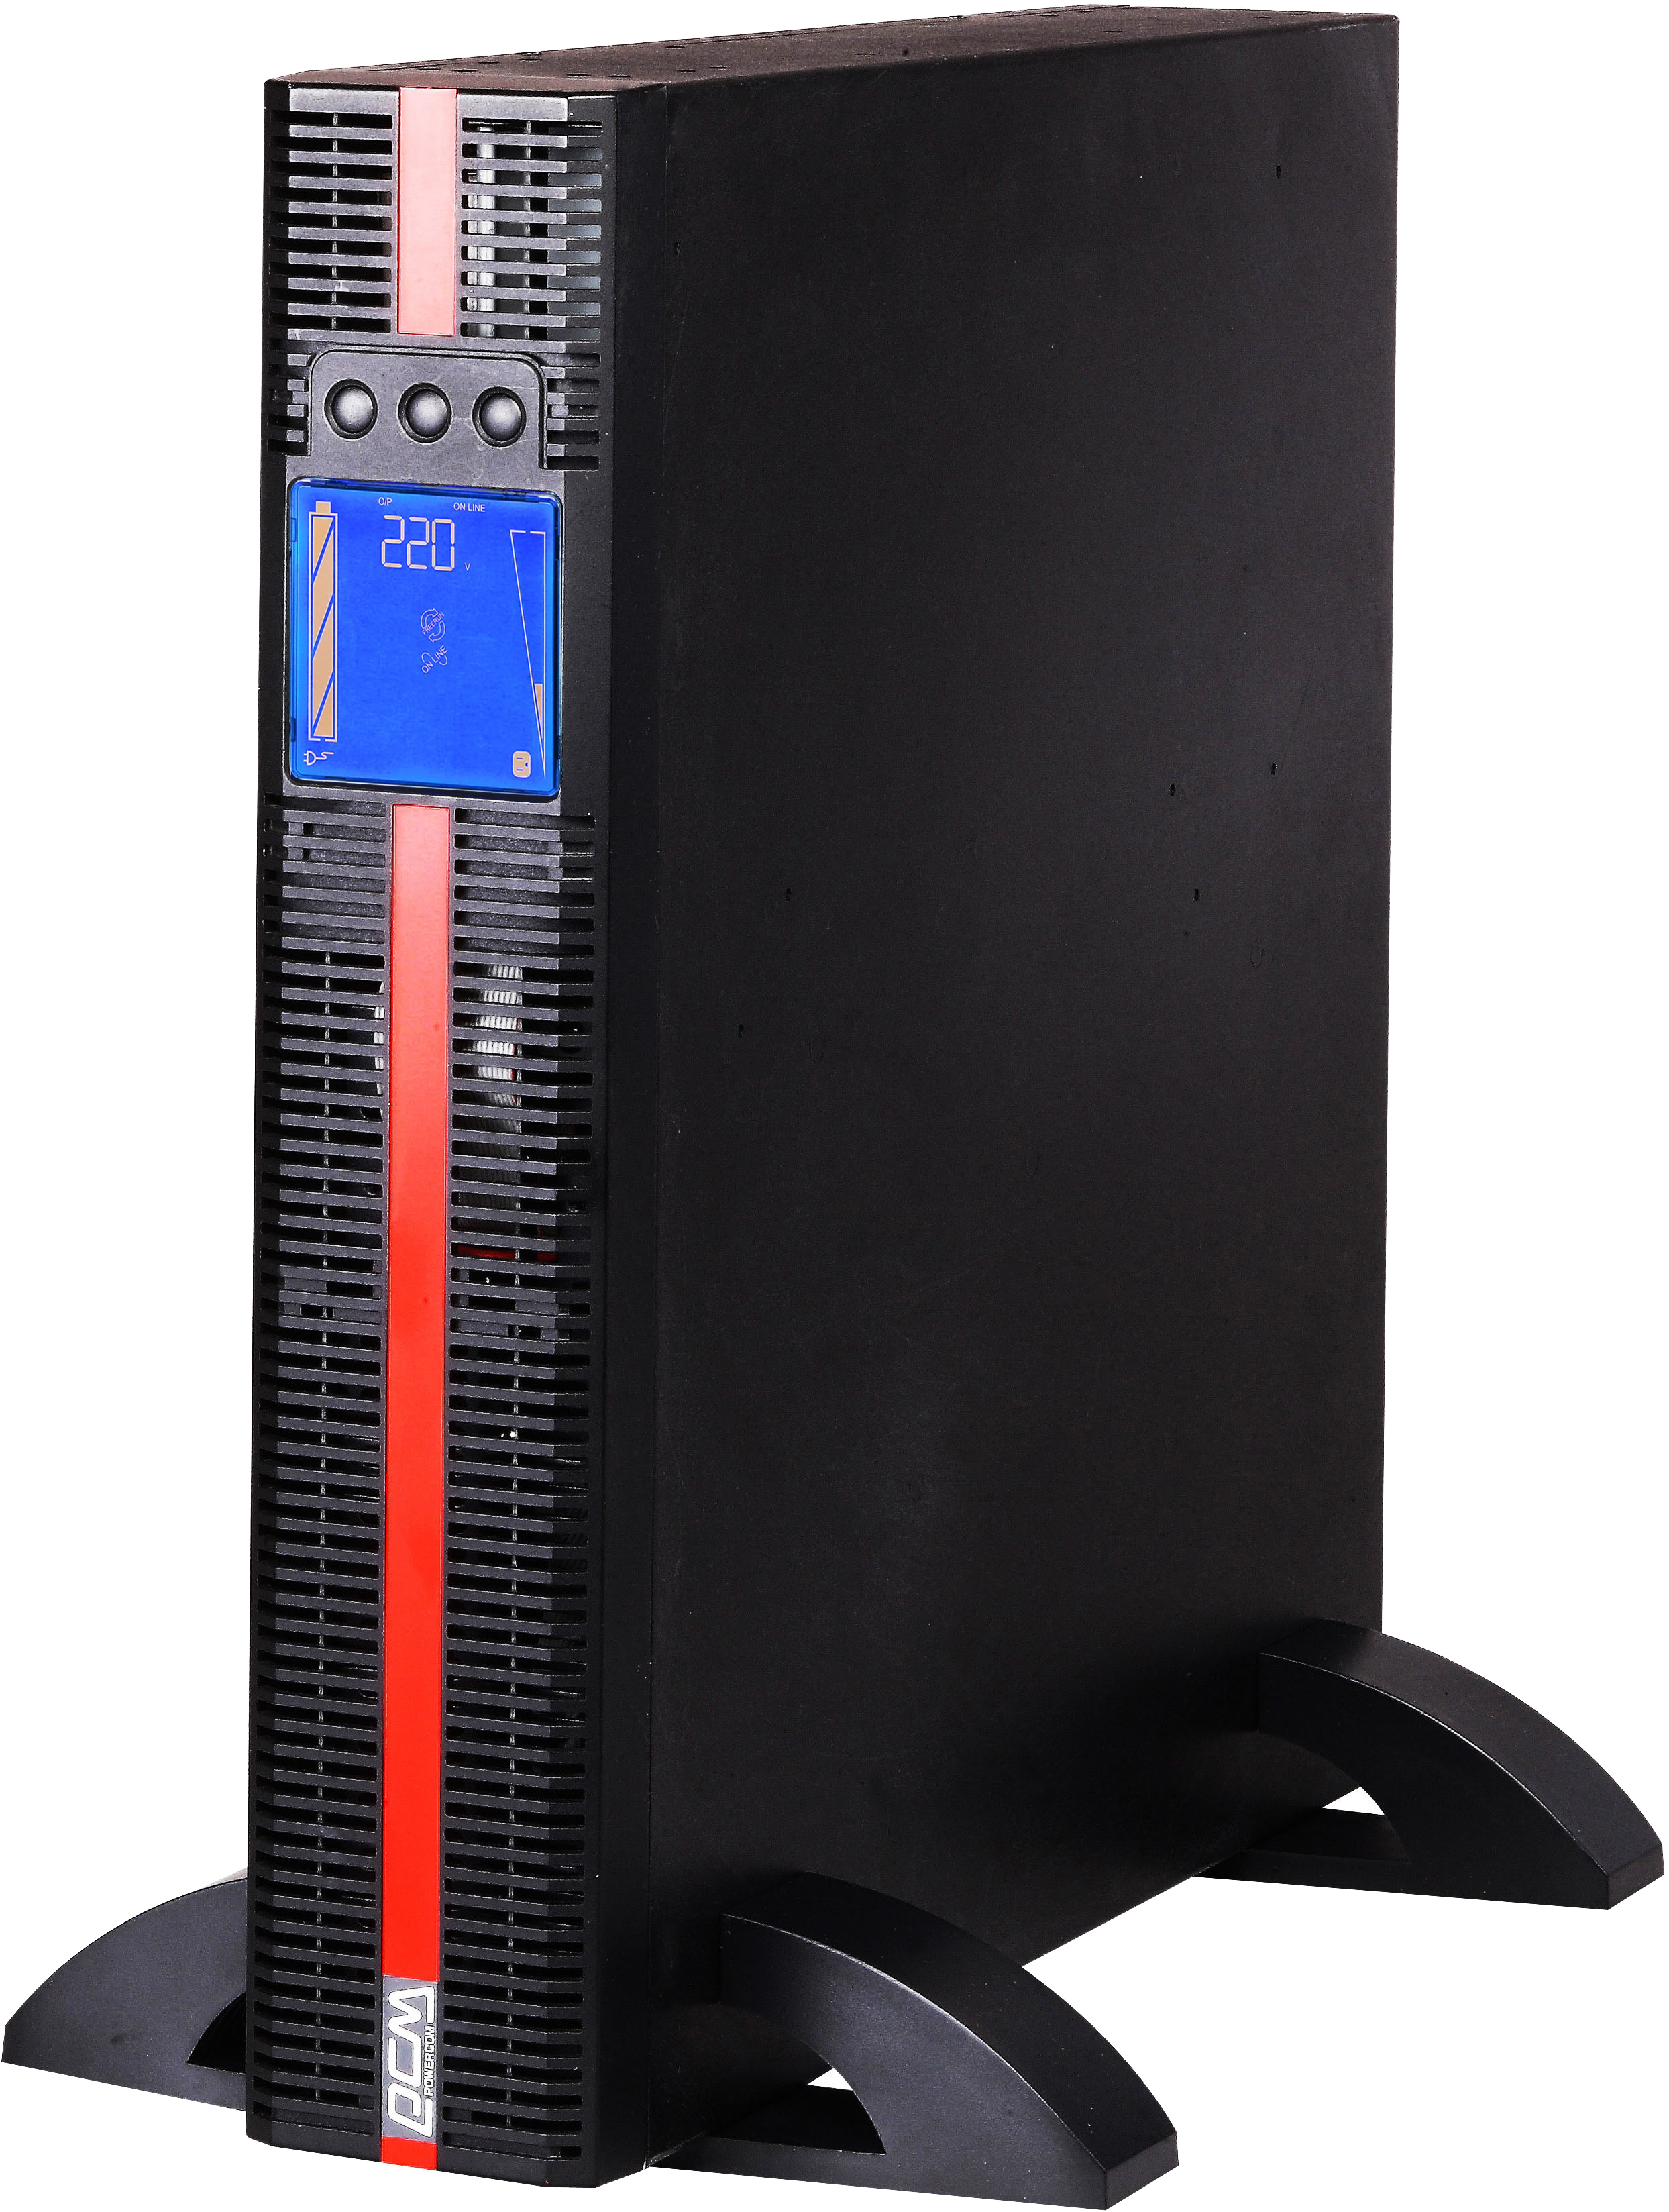 Источник бесперебойного питания Powercom MRT-1500 IEC 1500VA PF=1 online RS232 USB 4 IEC LCD в интернет-магазине, главное фото